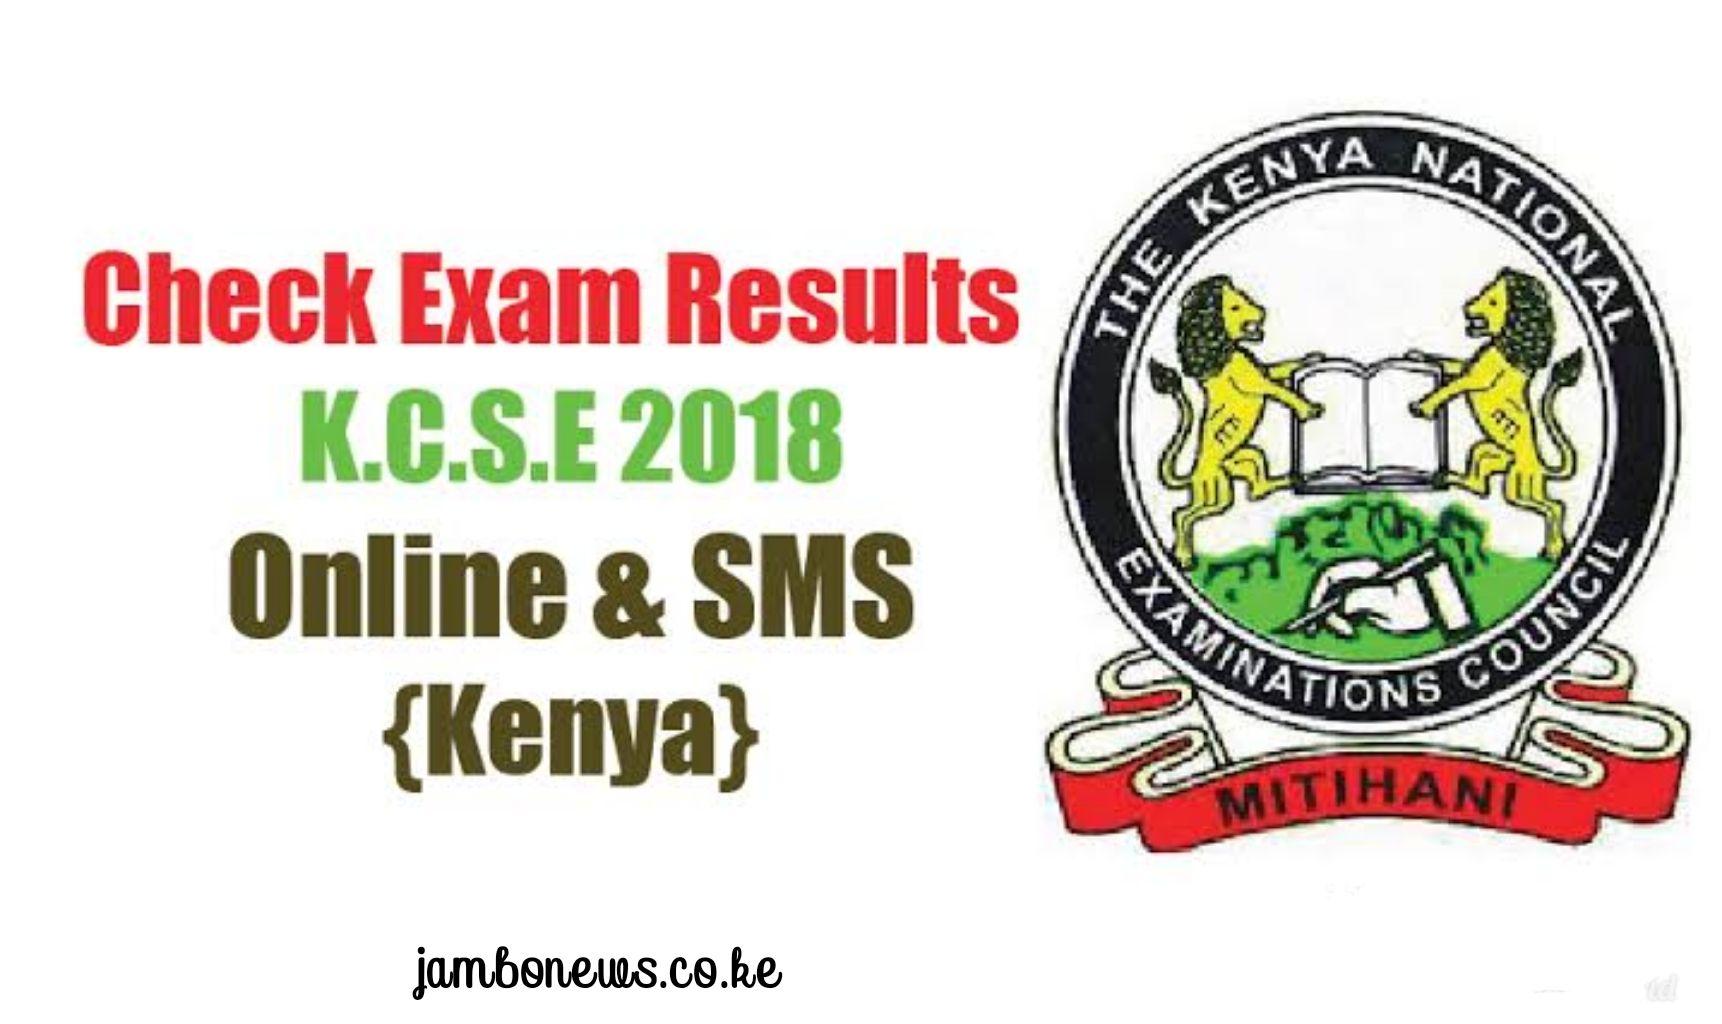 Knec Logo - How to check/receive KCSE 2018 results via KNEC SMS Code 20076, KNEC ...